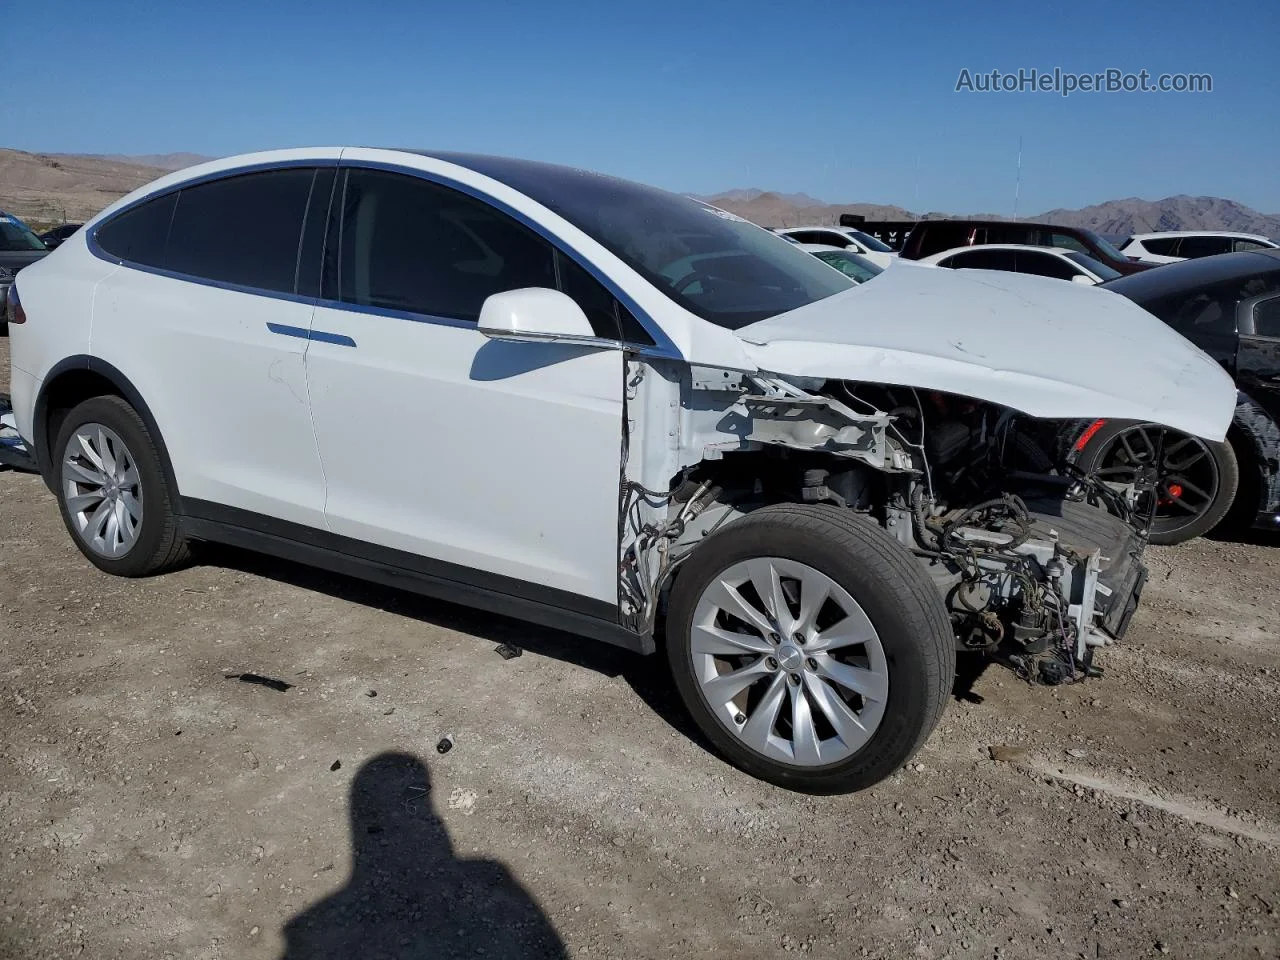 2016 Tesla Model X  White vin: 5YJXCBE21GF004842